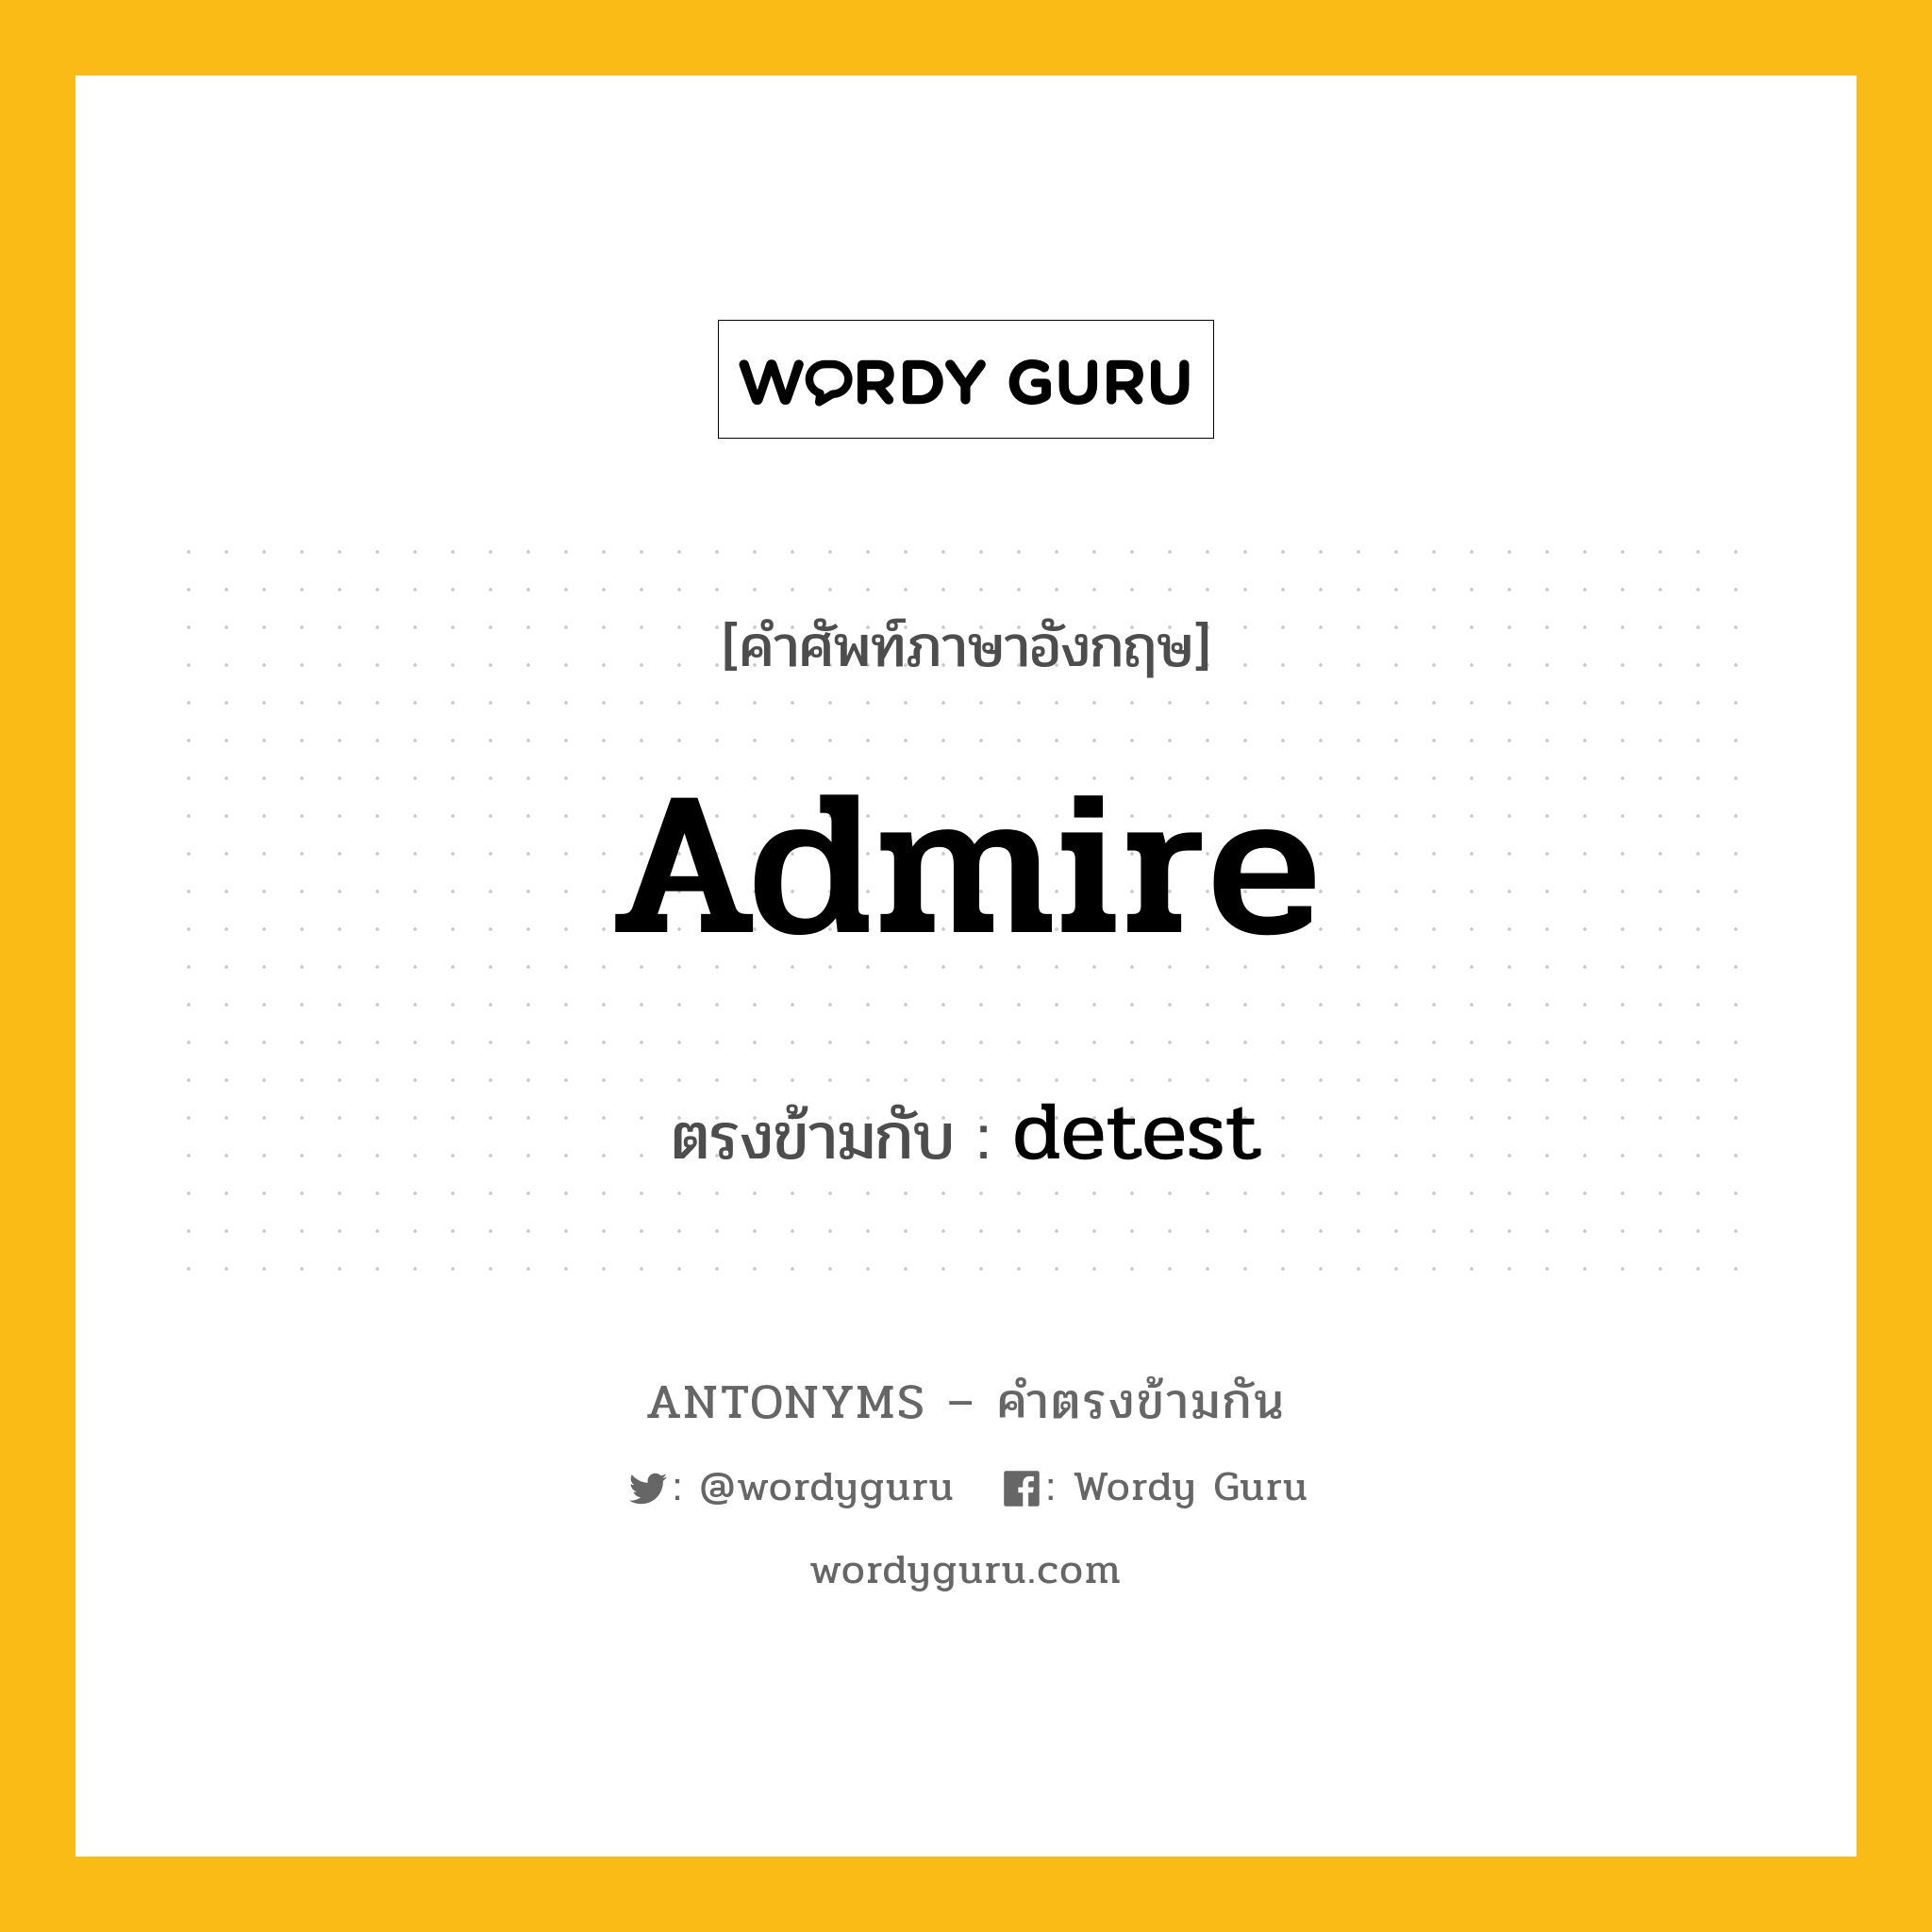 admire เป็นคำตรงข้ามกับคำไหนบ้าง?, คำศัพท์ภาษาอังกฤษ admire ตรงข้ามกับ detest หมวด detest